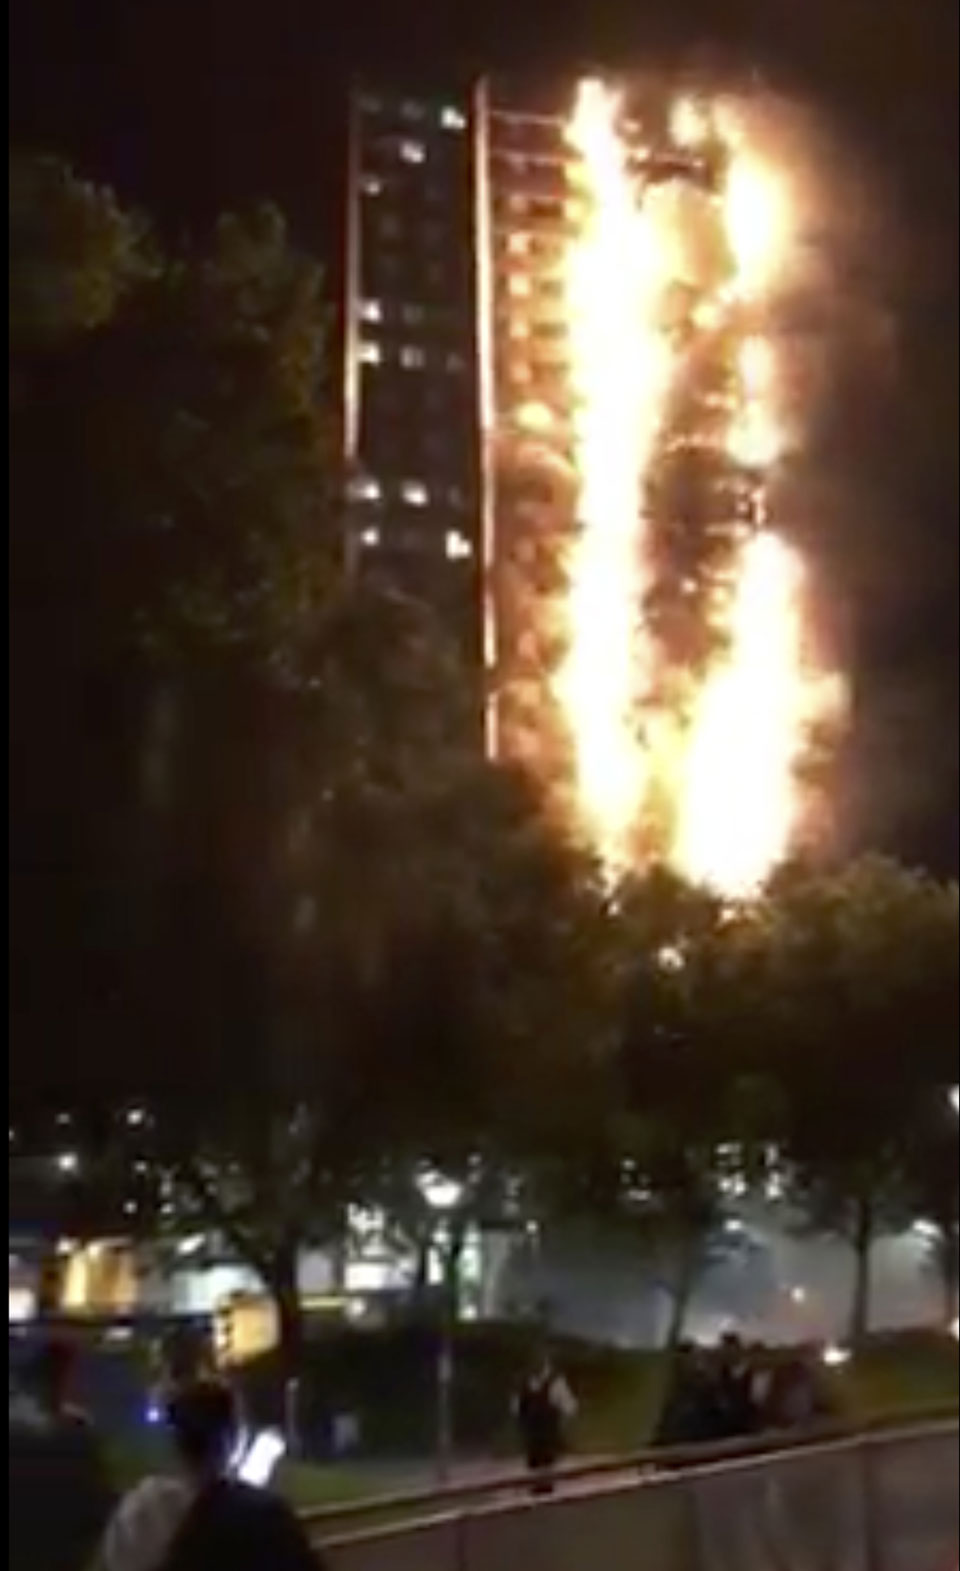 Firefighters battle massive blaze in London high-rise